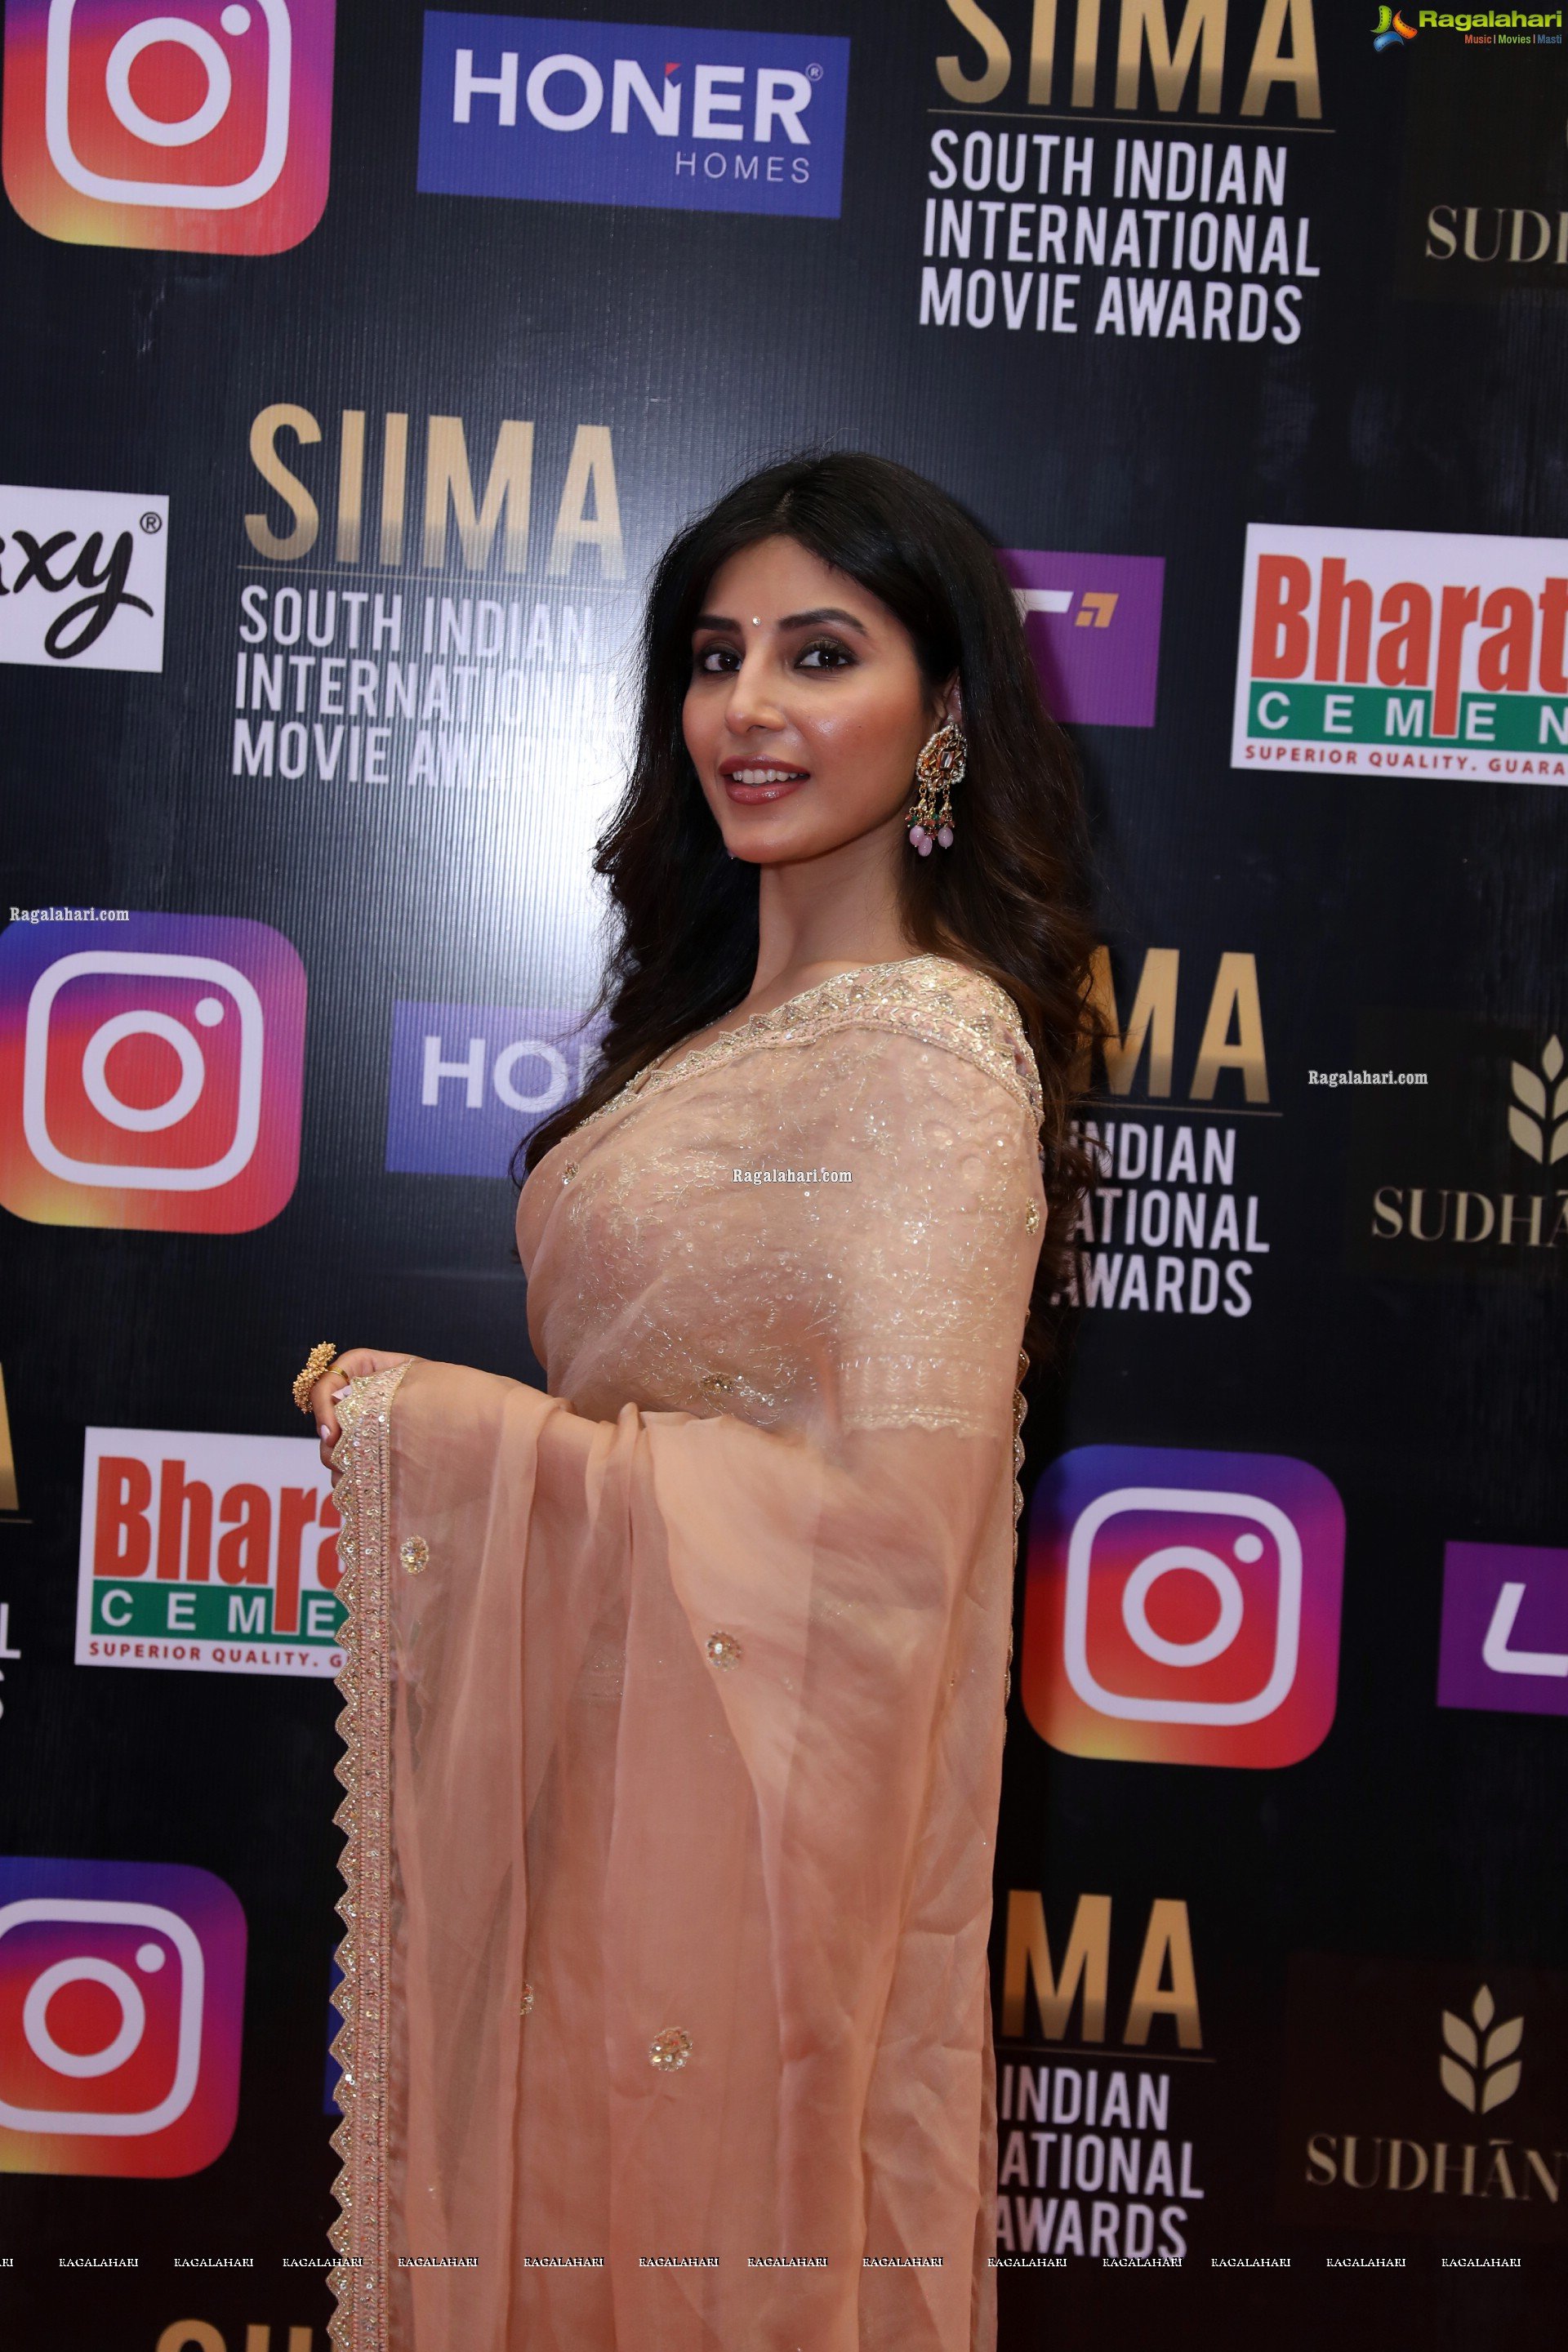 Harshita Gaur at SIIMA Awards 2021 Day 2, HD Photo Gallery